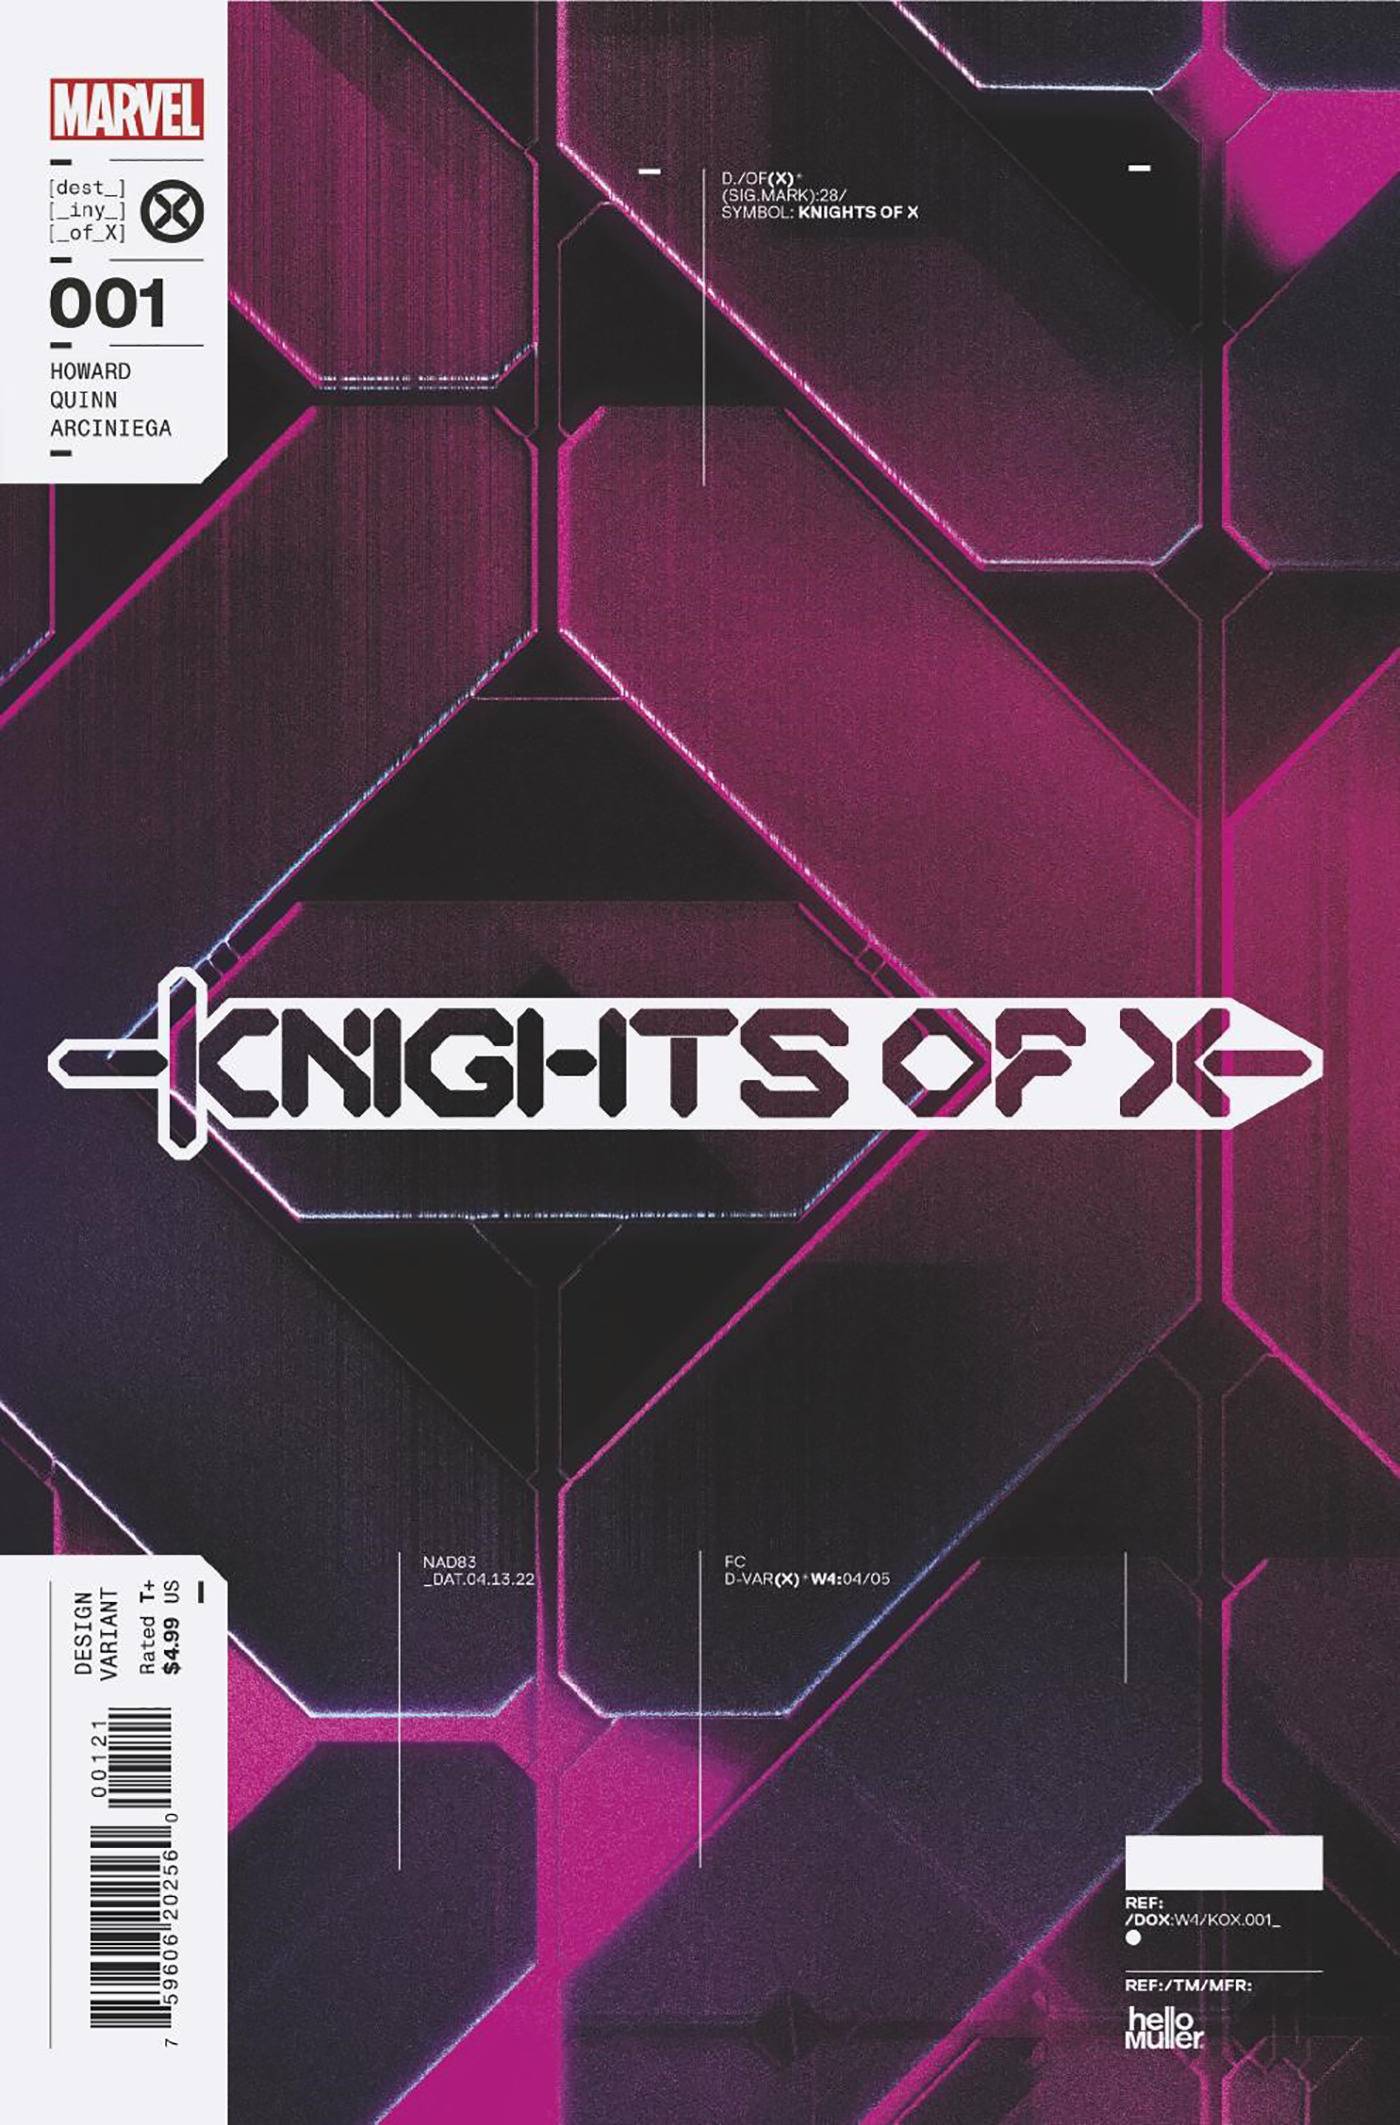 KNIGHTS OF X #1 1:10 MULLER DESIGN VAR